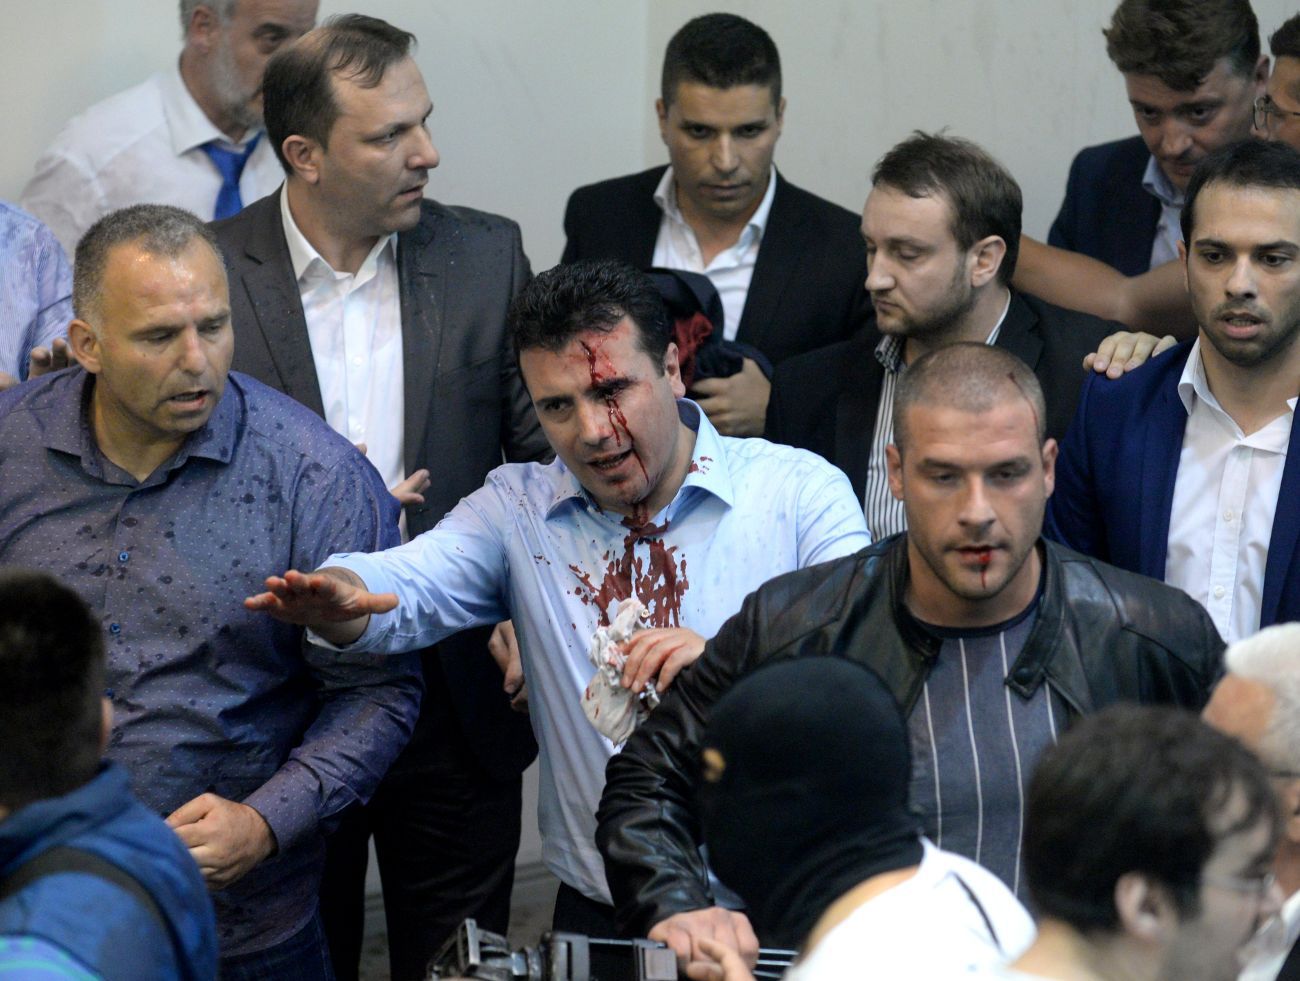 Zoran Zajevs parti har bildat majoritet tillsammans med albaner. Men alliansen möter dagligen protester från makedonska nationalister, enligt Reuters. Albaner utgör en tredjedel av landets befolkning. AFP PHOTO / Robert ATANASOVSKI / TT 